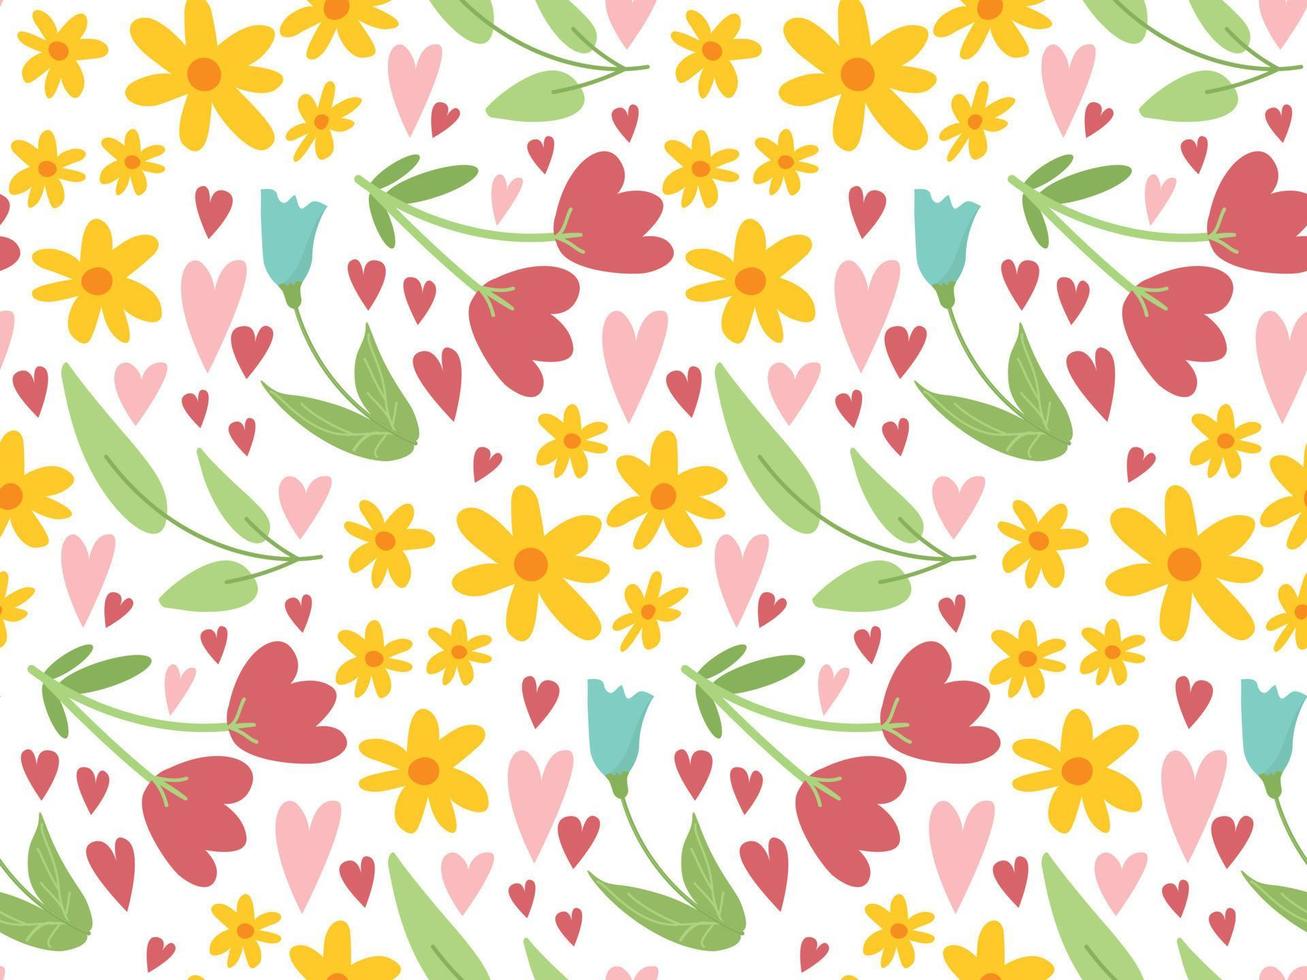 padrão sem emenda floral bonito da páscoa com flores de doodle simples, folhas e corações em fundo branco. textura de primavera vetorial desenhada à mão vetor